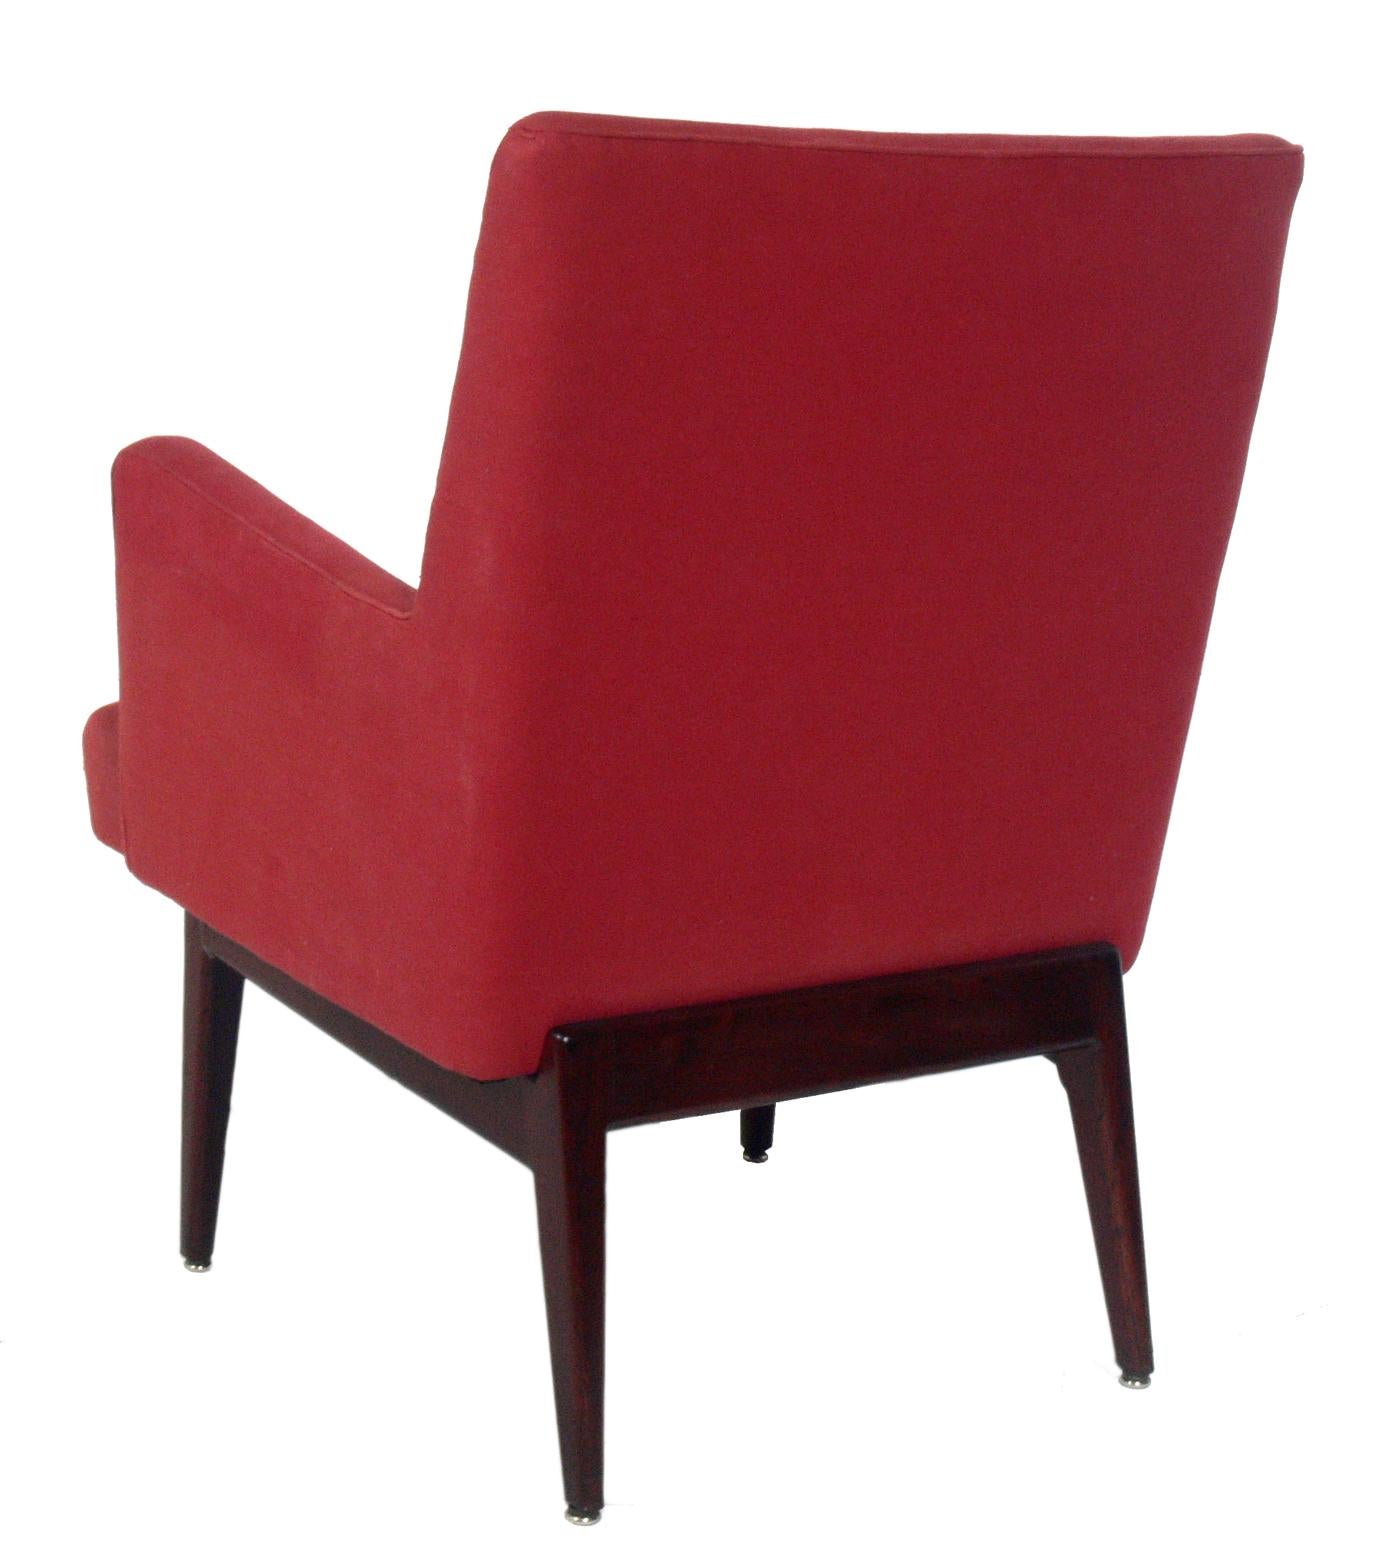 Chaises longues aux lignes épurées, conçues par Jens Risom, américain, vers les années 1960. Les créations de Risom font toujours un clin d'œil au design moderne danois, et ces chaises ne font pas exception. Ils présentent des lignes épurées, avec